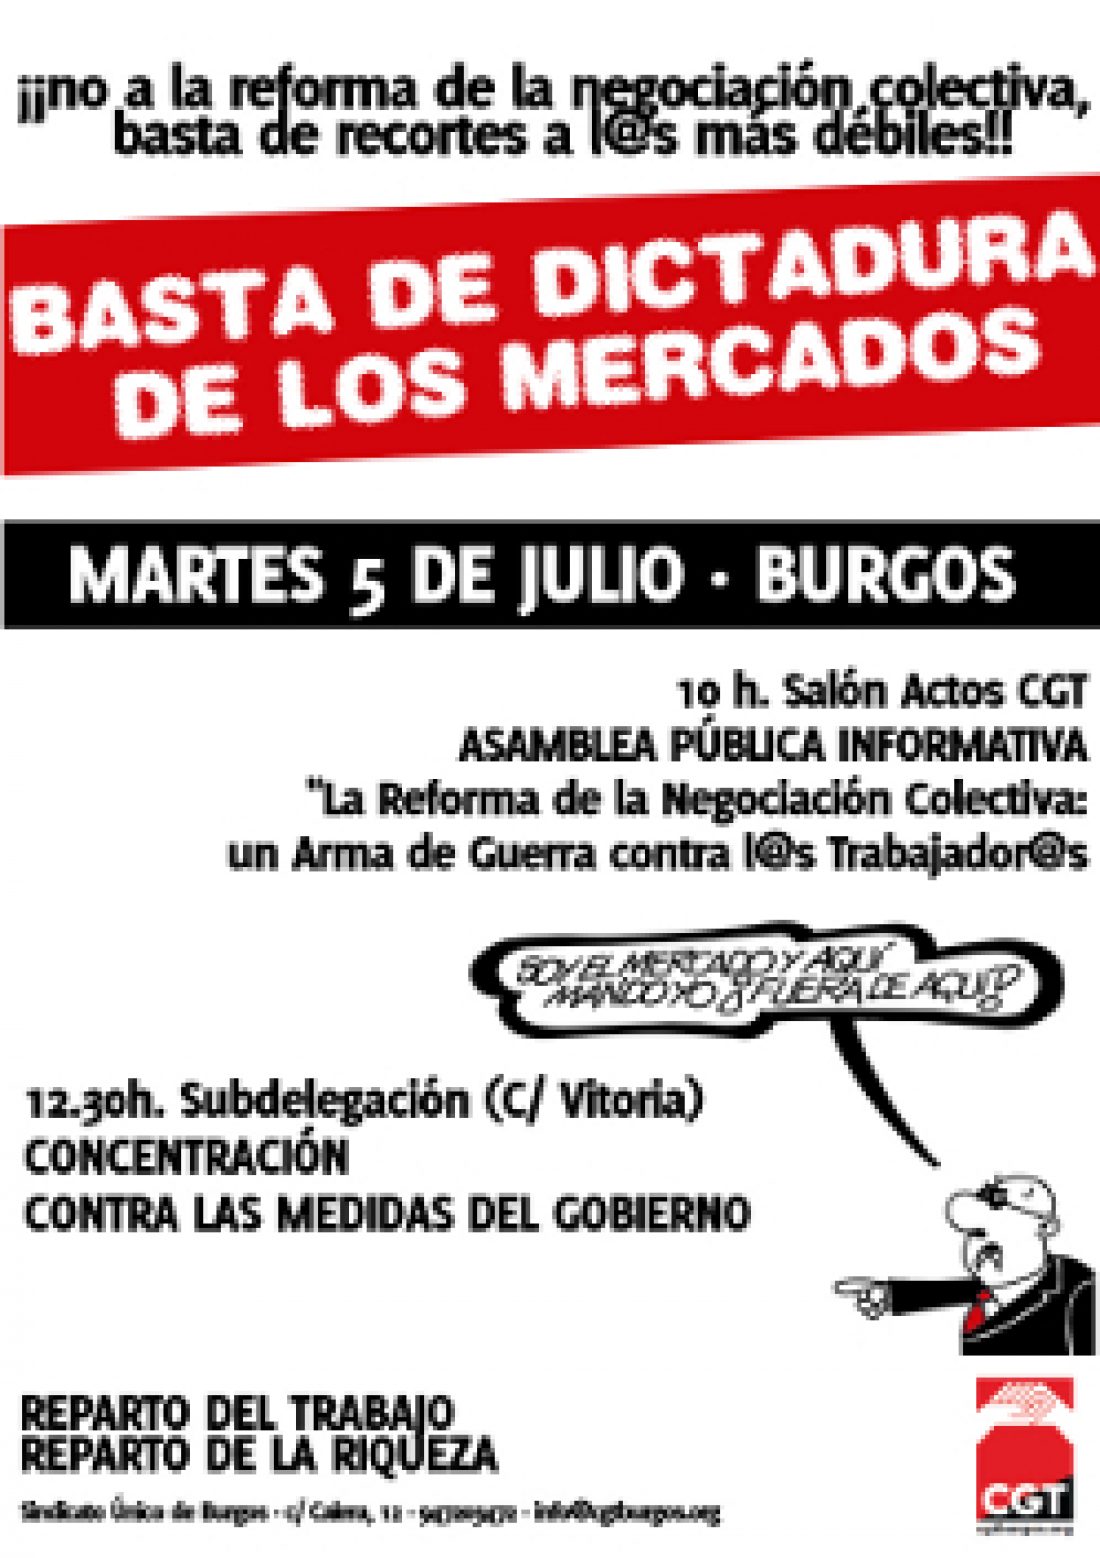 Burgos, 5 de Julio : Asamblea informativa y concentración contra las medidas del gobierno